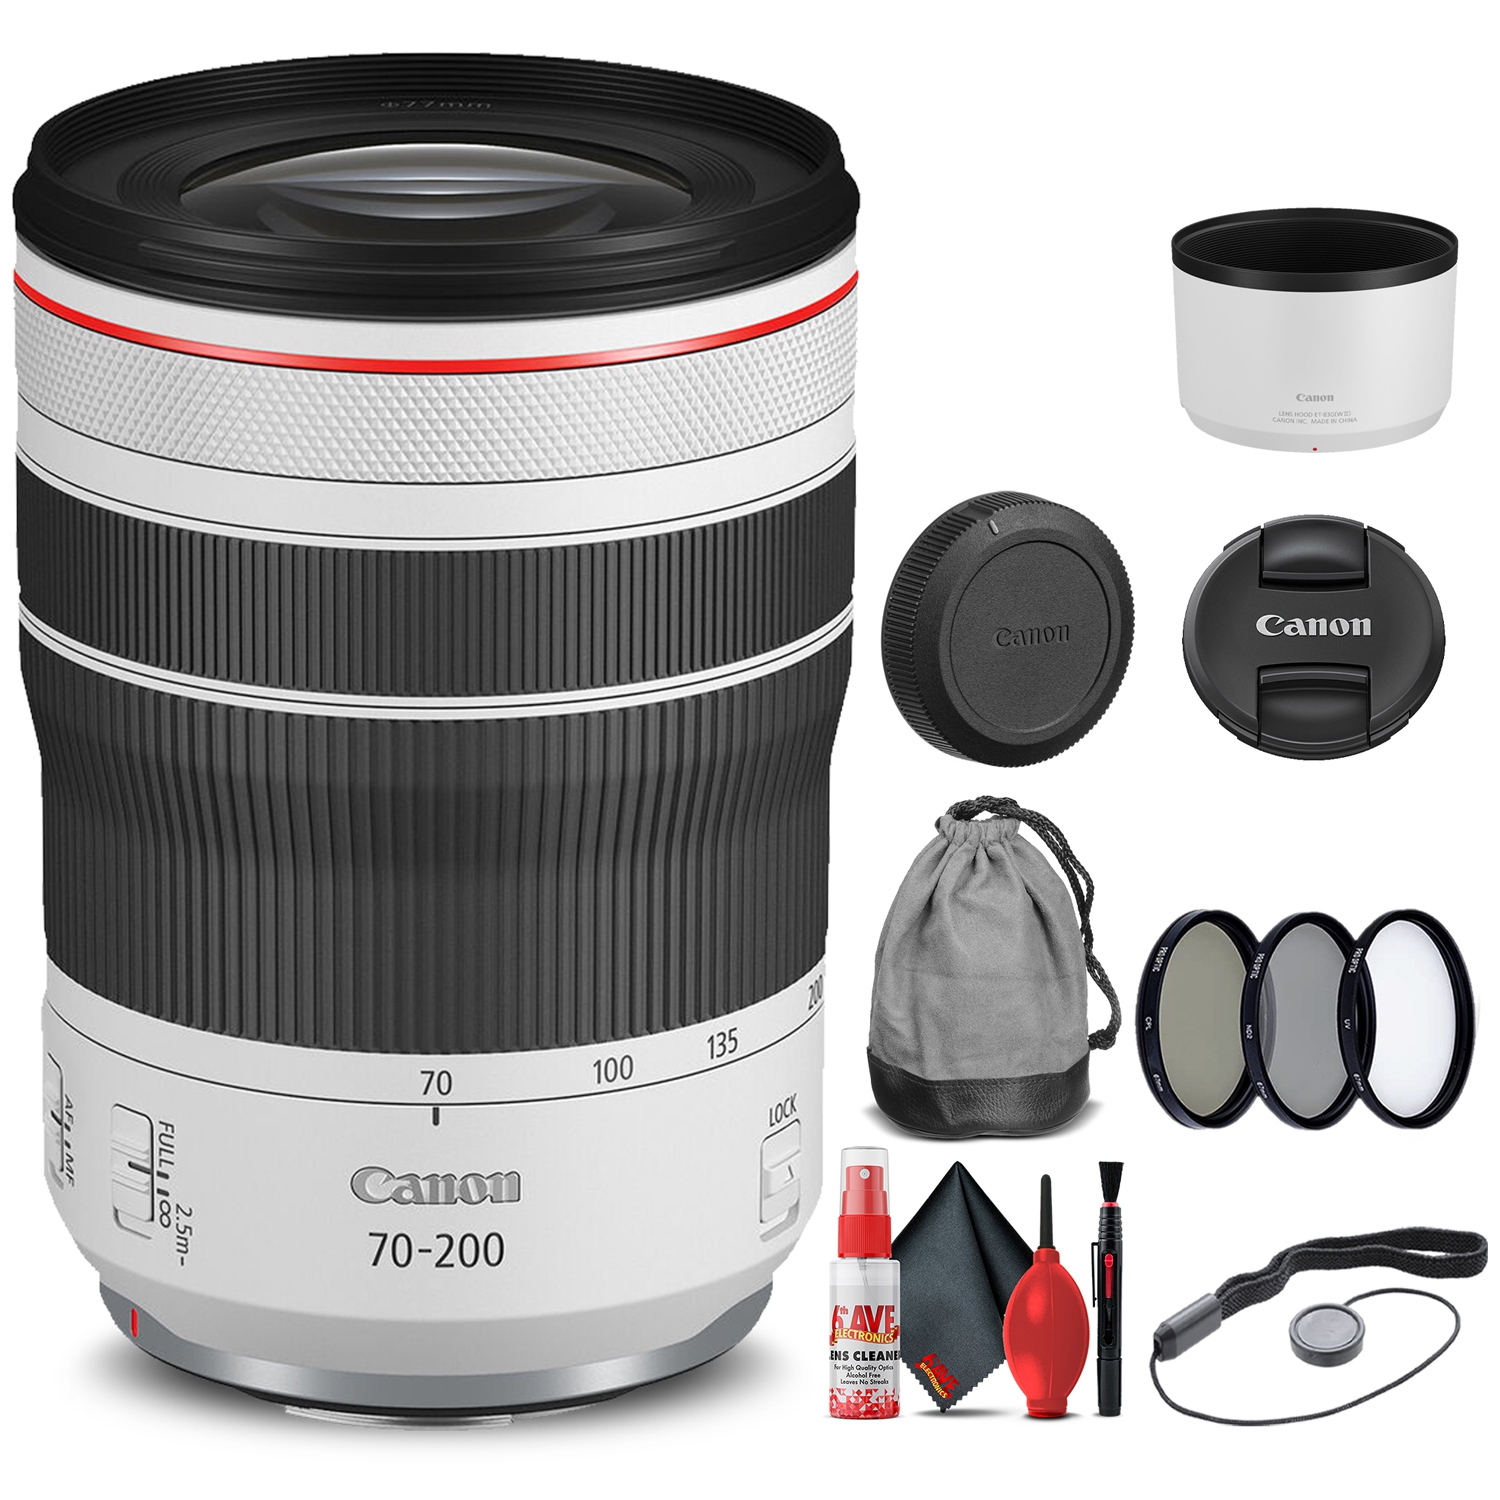 Canon RF 70-200mm f/4L IS USM Lens (4318C002) + Filter Kit + Cap Keeper Base Bundle